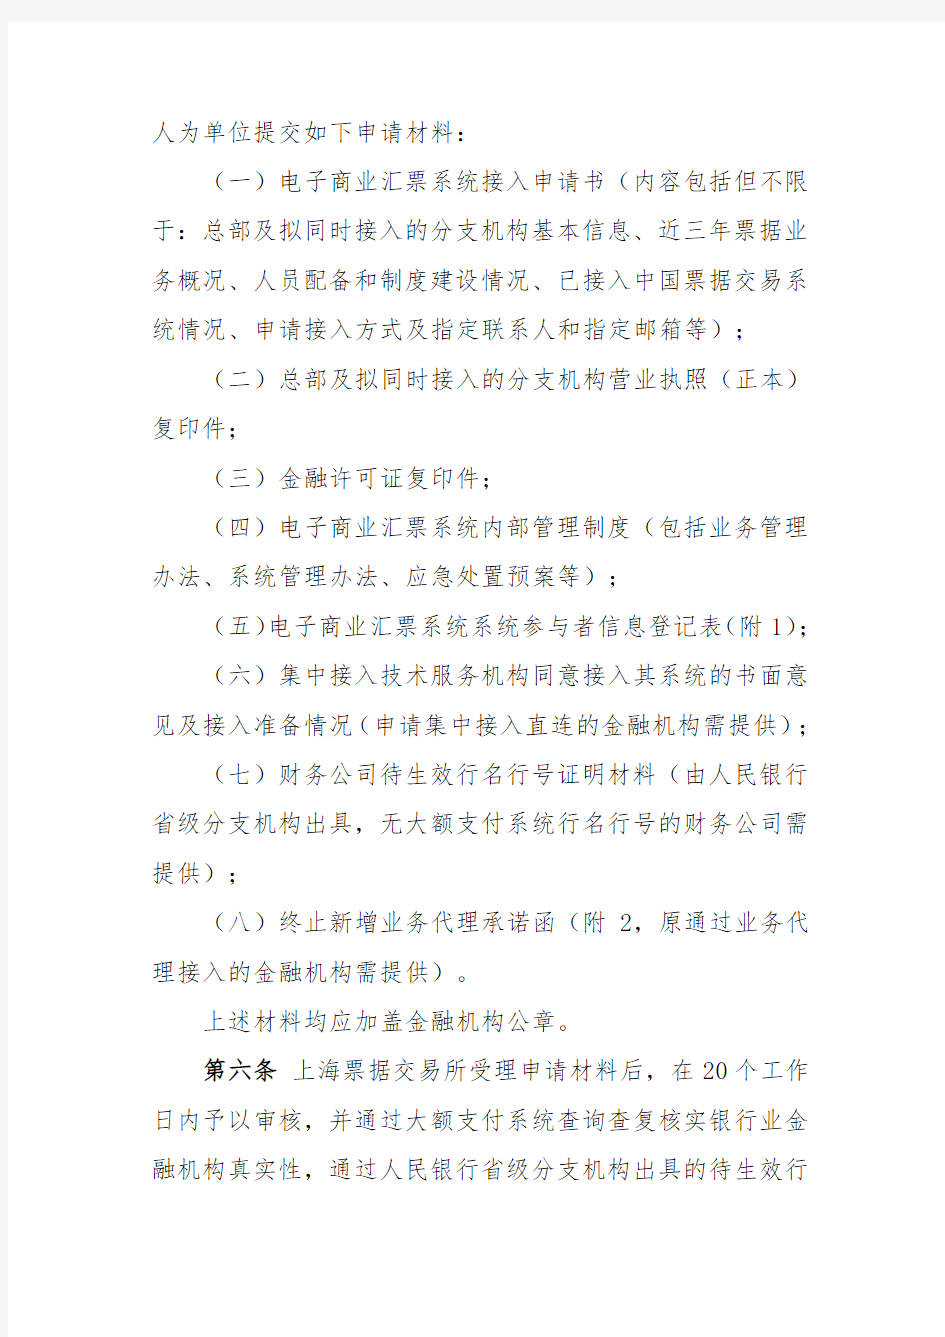 上海票据交易所电票系统接入操作规程